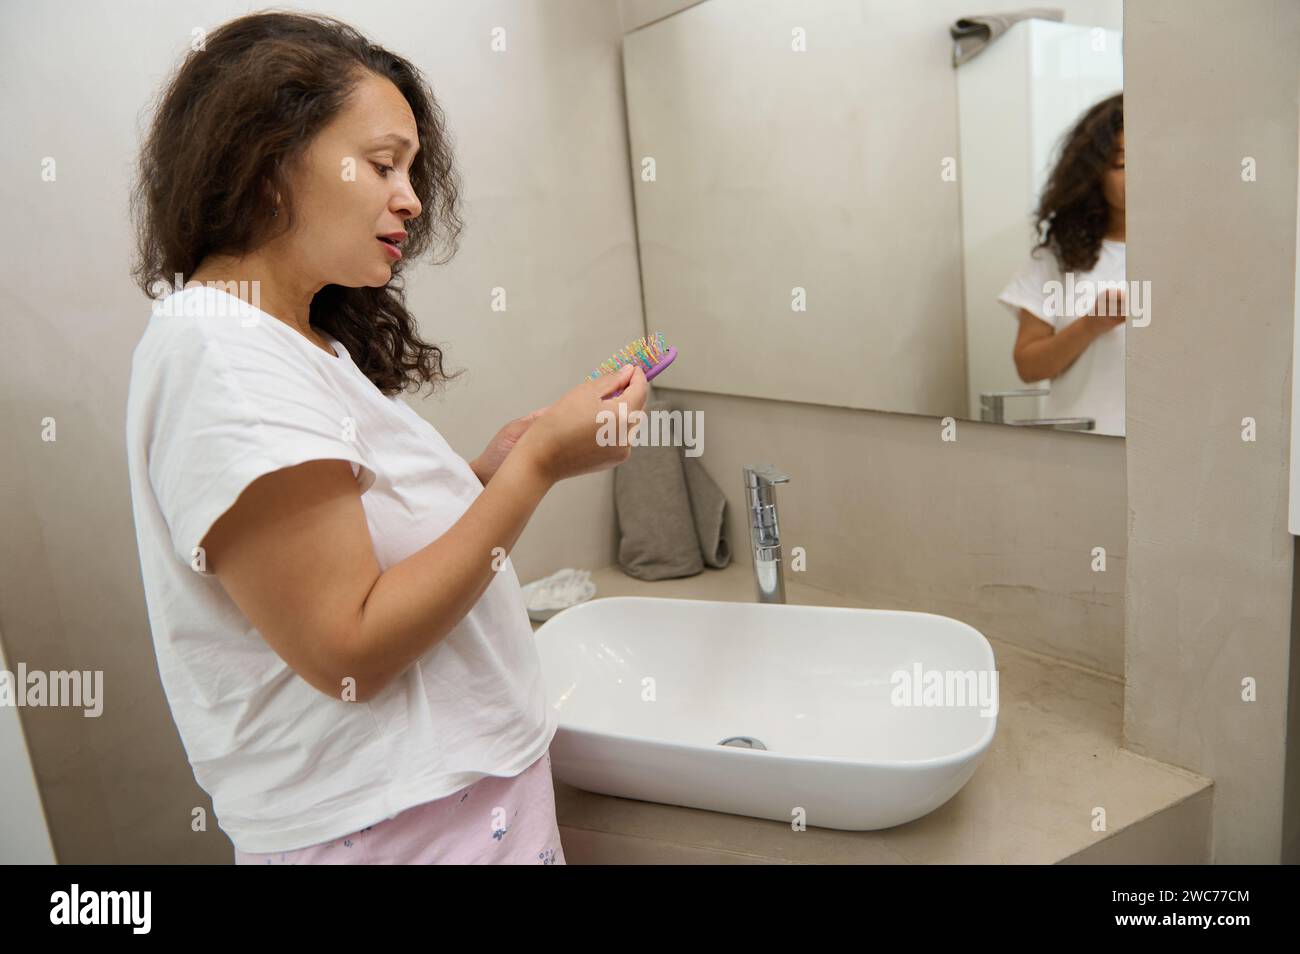 Verärgerte Frau, die verlorene Haare von einer Haarbürste entfernt, nachdem sie ihr geschädigtes lockiges und trockenes Haar gekämmt hat und im Badezimmer zu Hause am Waschbecken steht. Haarpflegekonzept Stockfoto